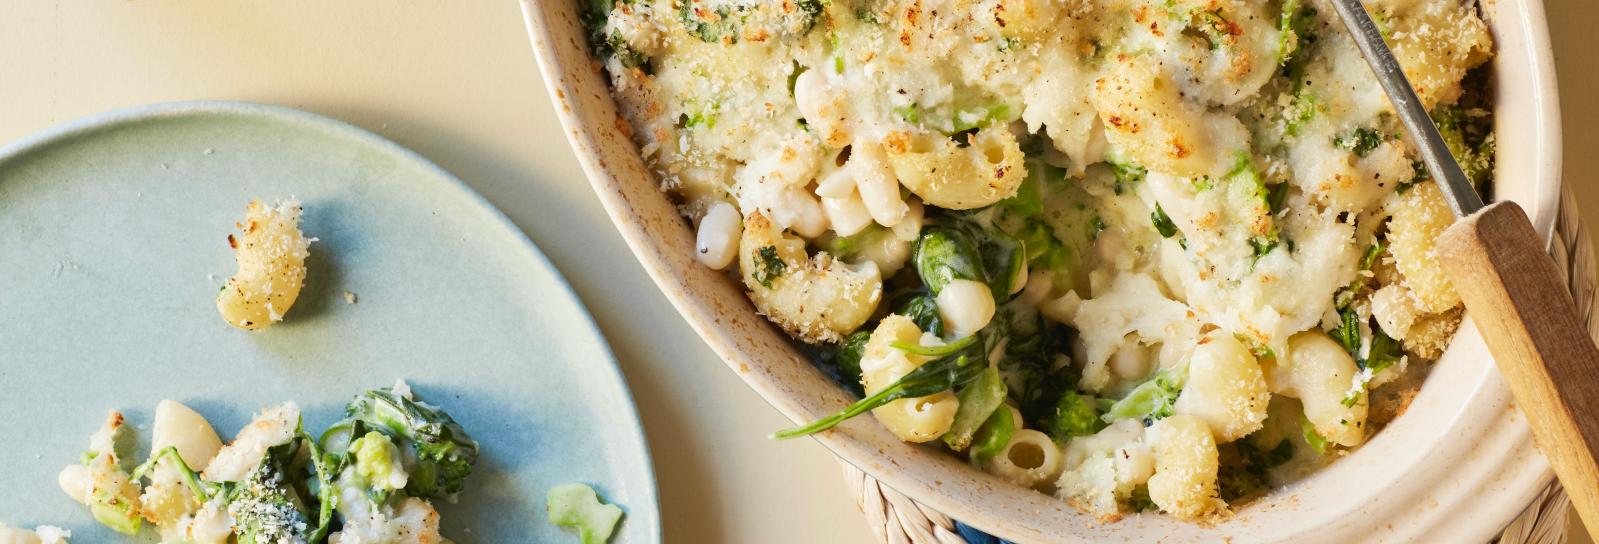 Green mac n´cheese med spinat-broccolicreme og hvide bønner